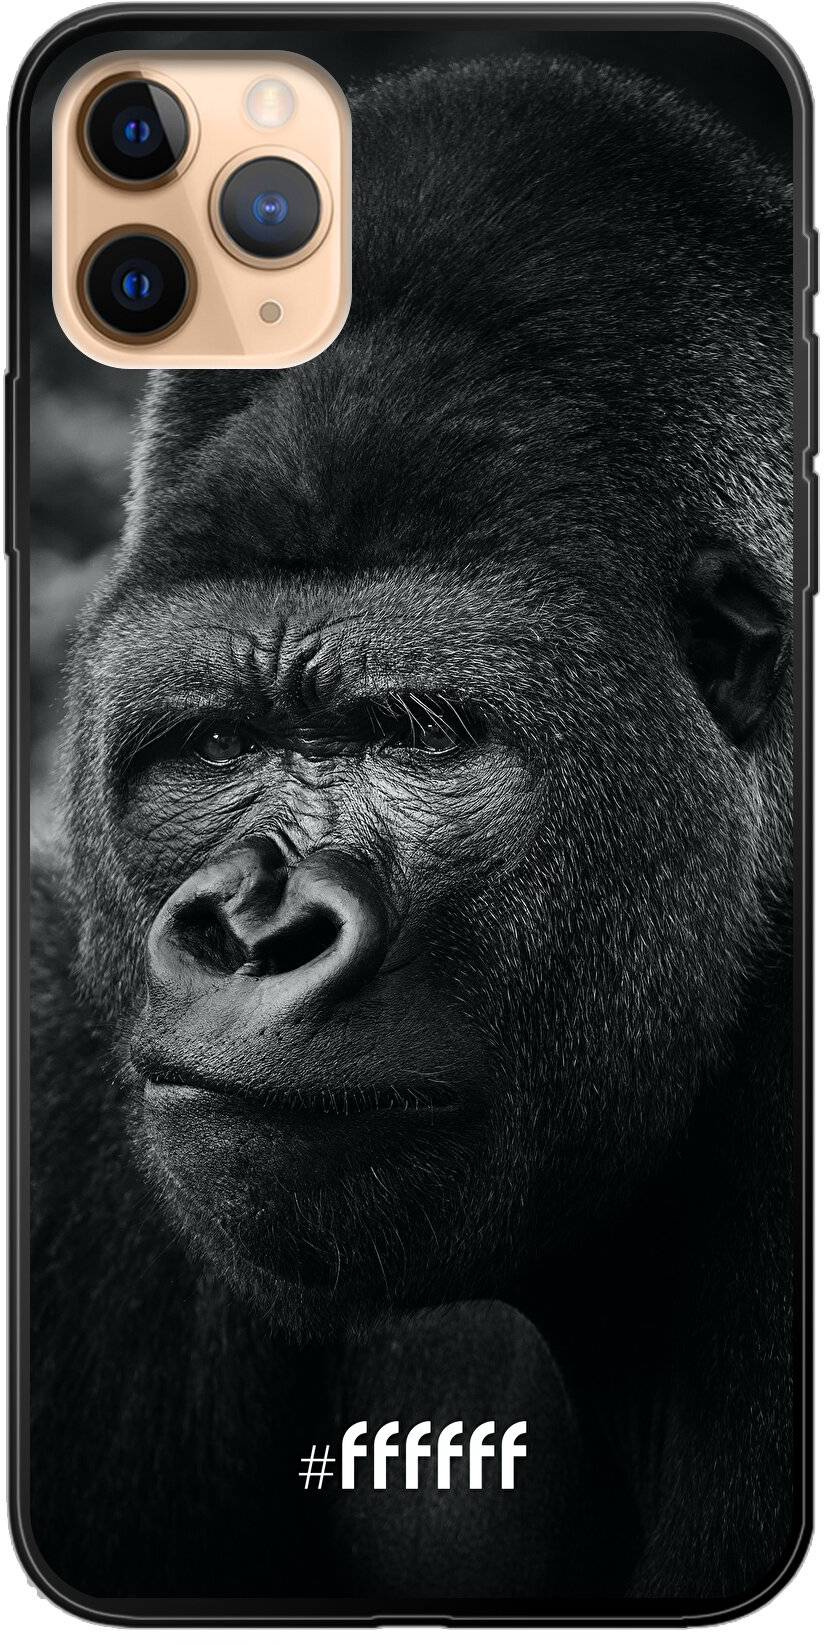 Gorilla iPhone 11 Pro Max